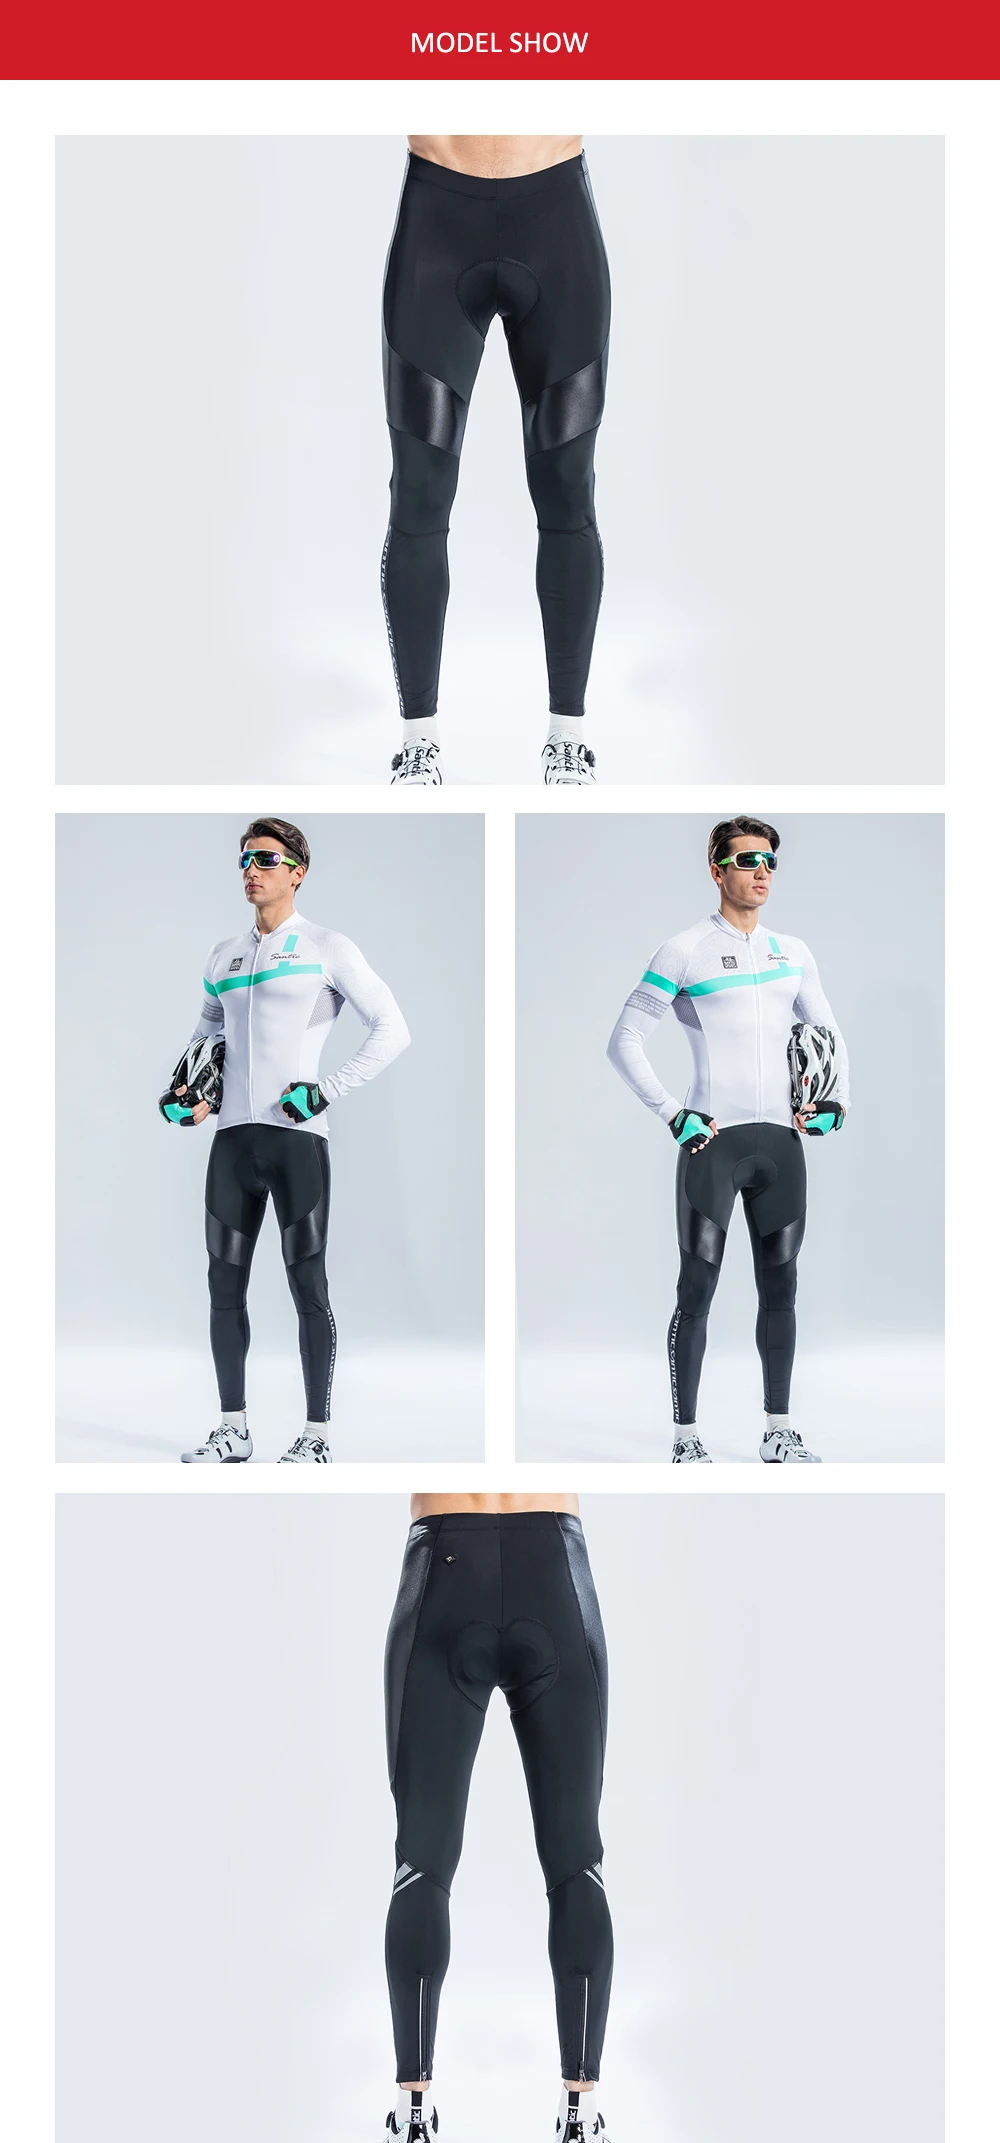 Santic для мужчин Велоспорт мягкие брюки длинные Pro fit весна осень 4D Подушка обивка более 30 км быстросохнущая дышащая Азия S-3XL M8C04100